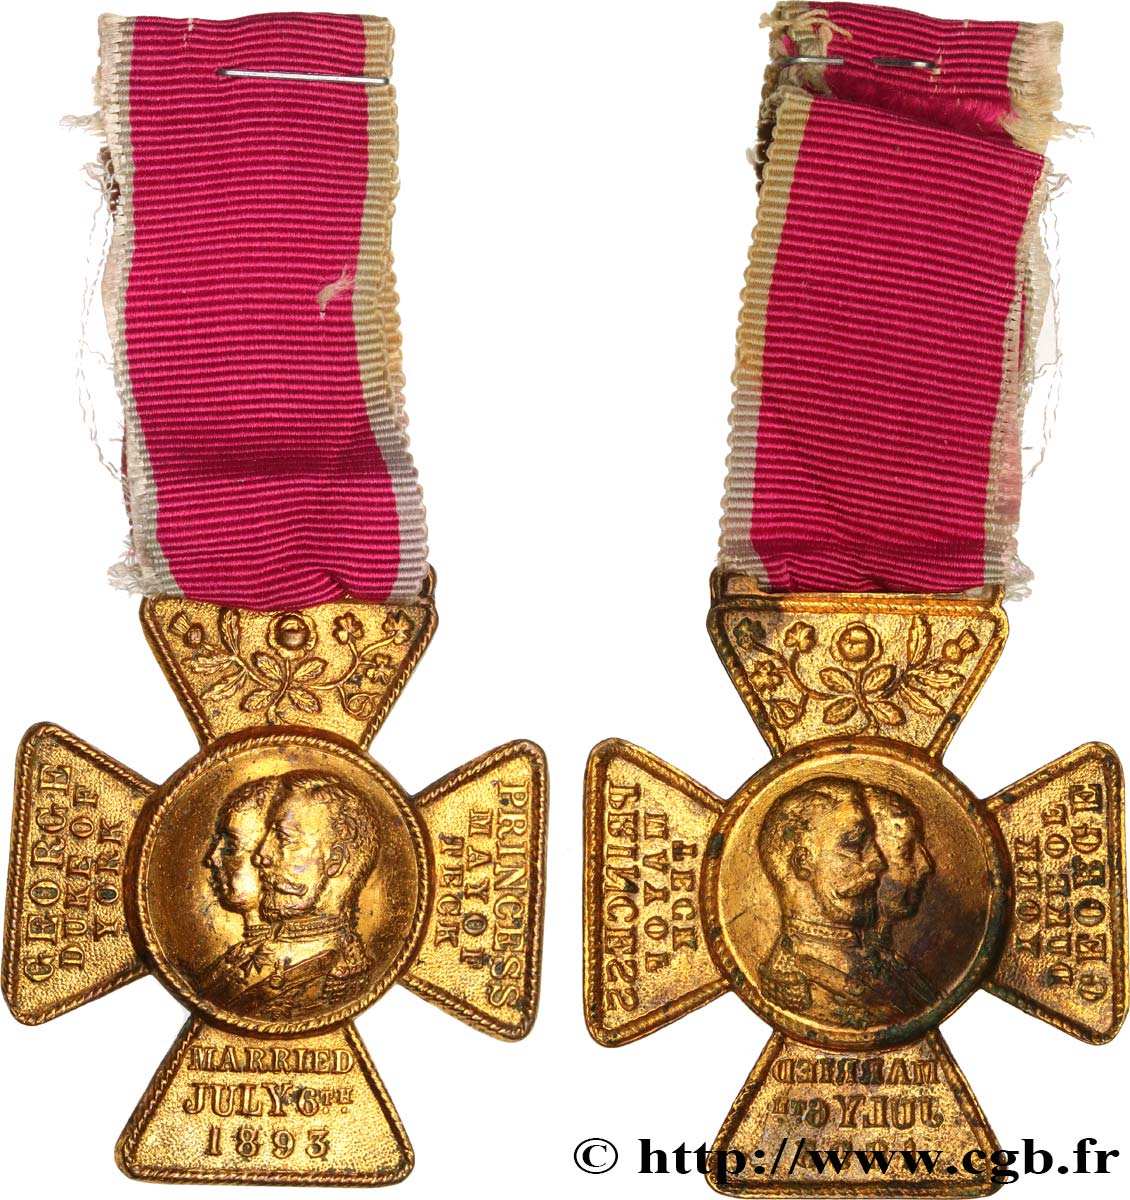 ANGLETERRE - GEORGES V Médaille, Mariage de la Princesse Victoria de teck avec le Prince George, duc d’York TTB